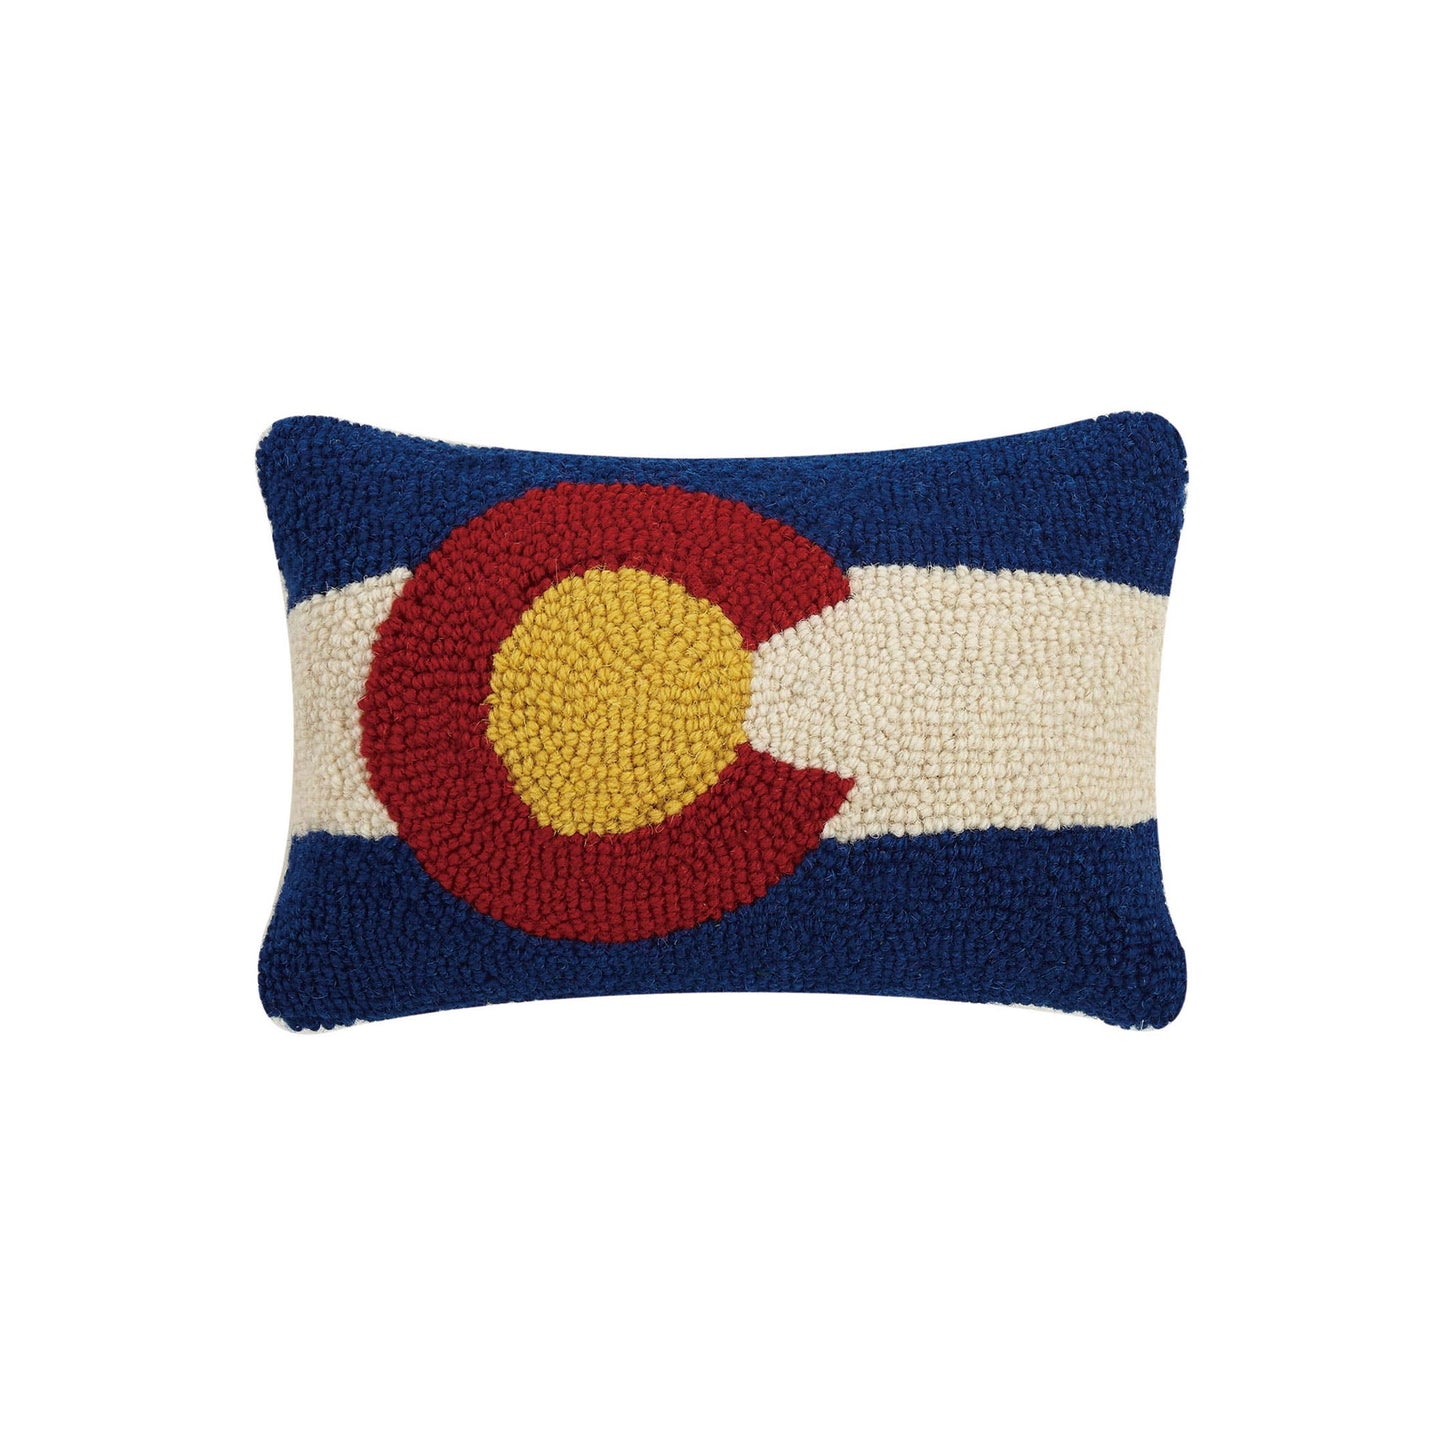 Colorado Hook Pillow